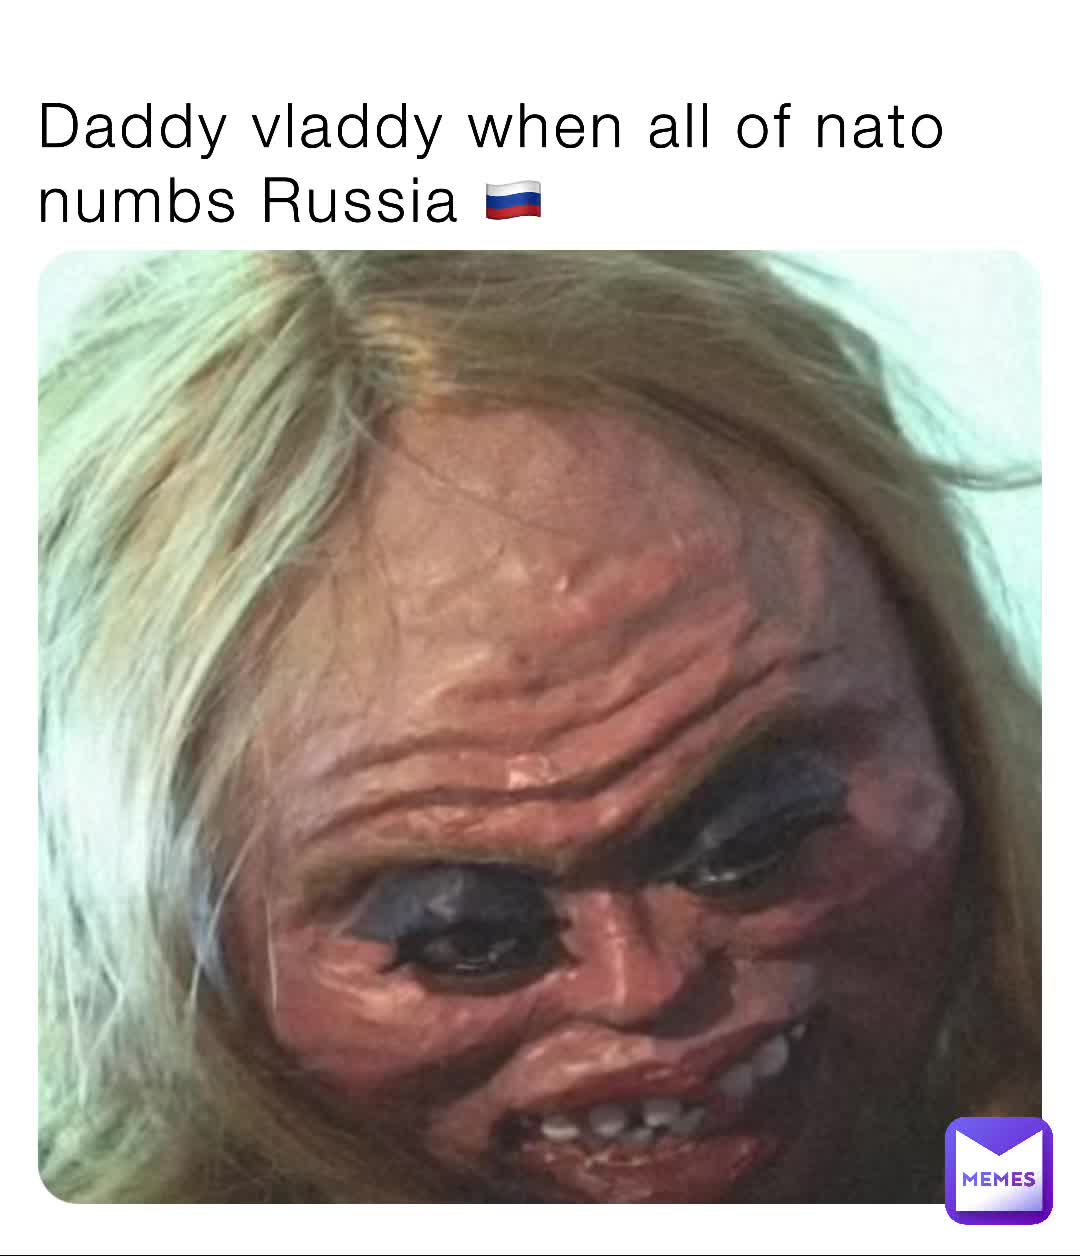 Vladdy daddy